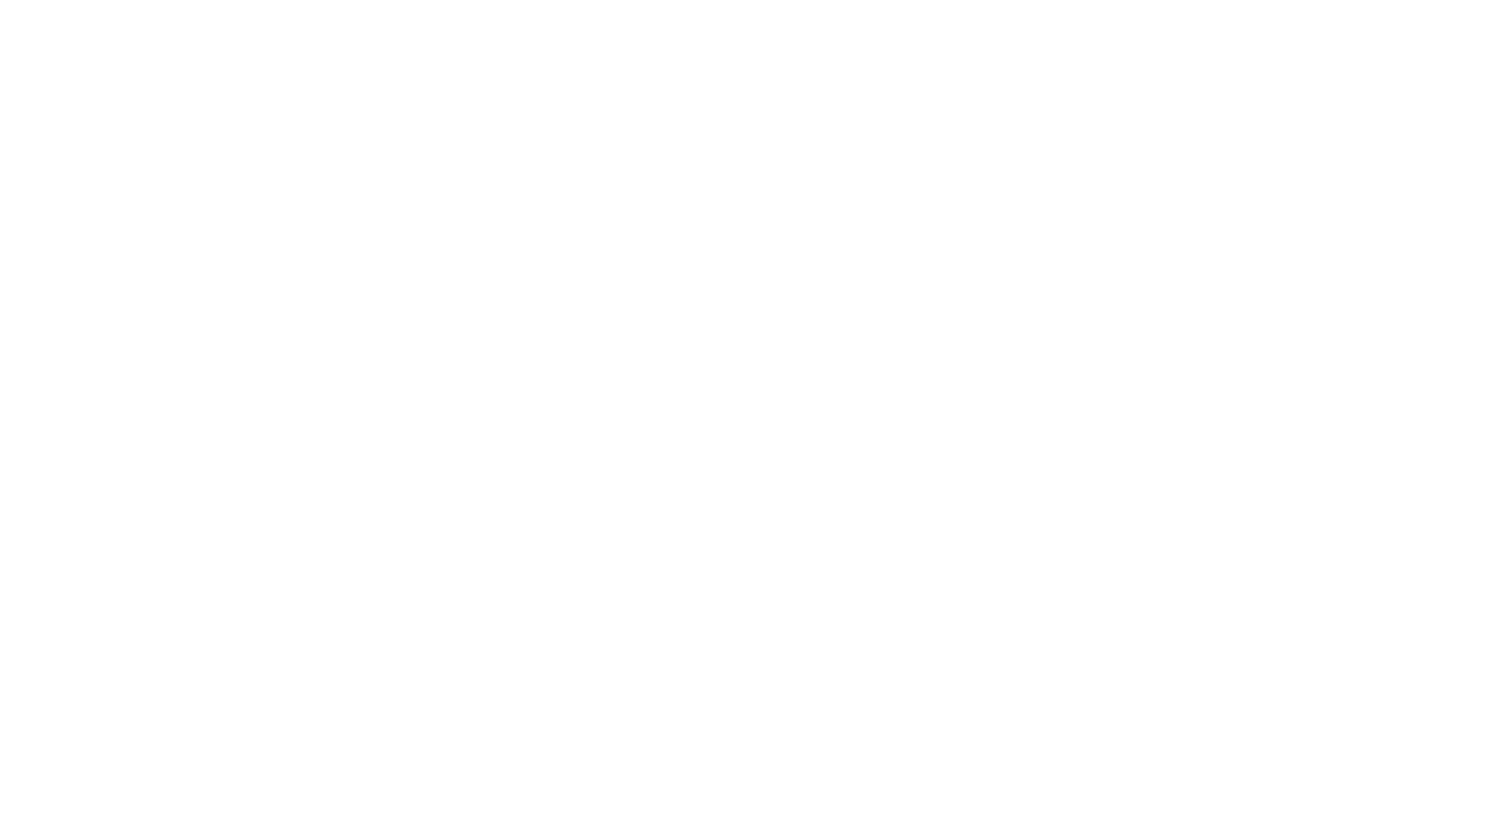 The Media Training Company